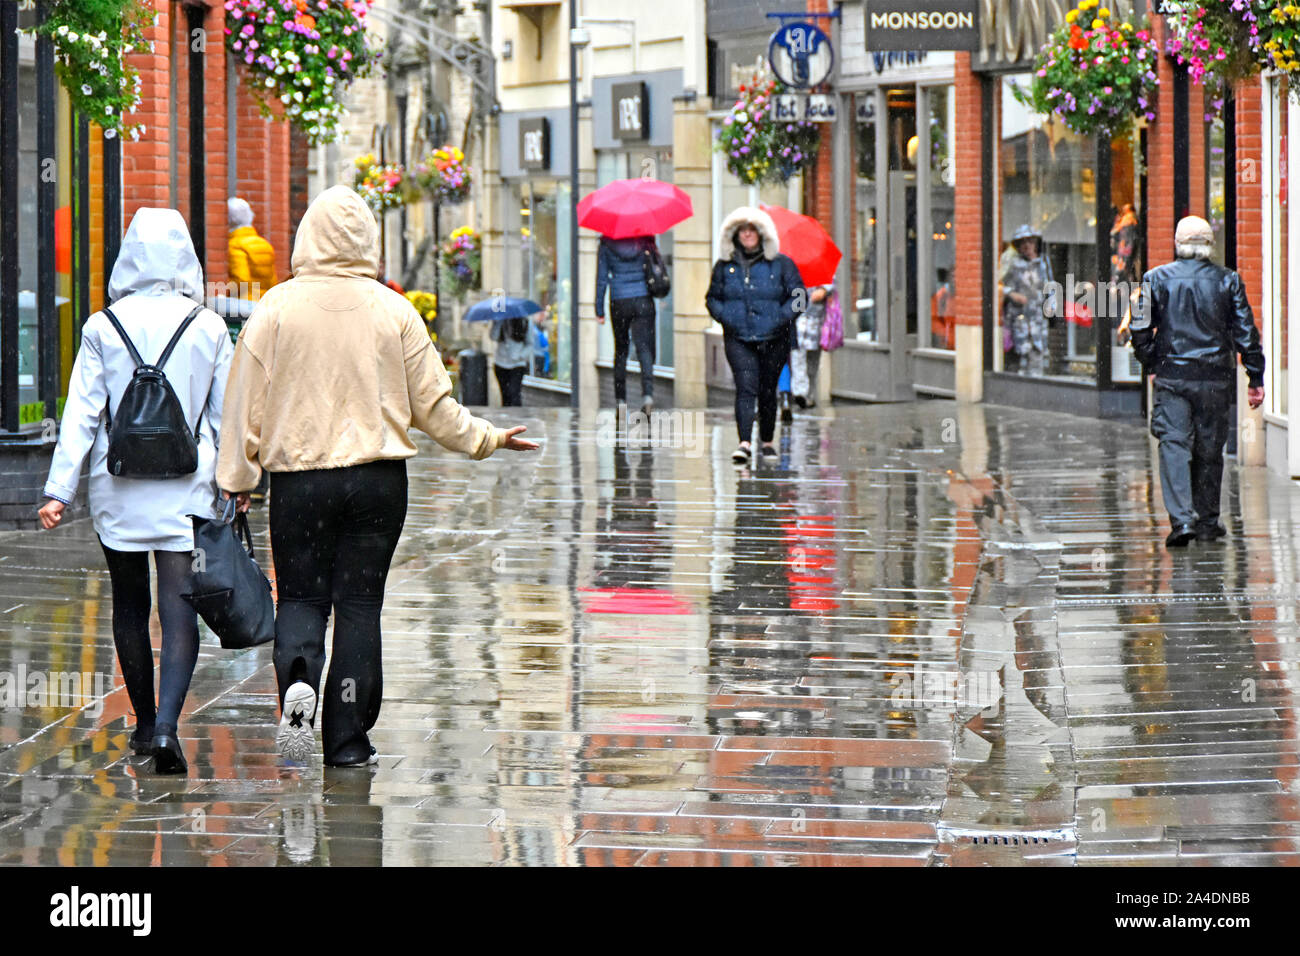 Scena di strada di piovere su persone in condizioni di bagnato centro città soli pedoni shoppers street zona nella riflessione di pioggia & riflessioni Durham Regno Unito Inghilterra Foto Stock